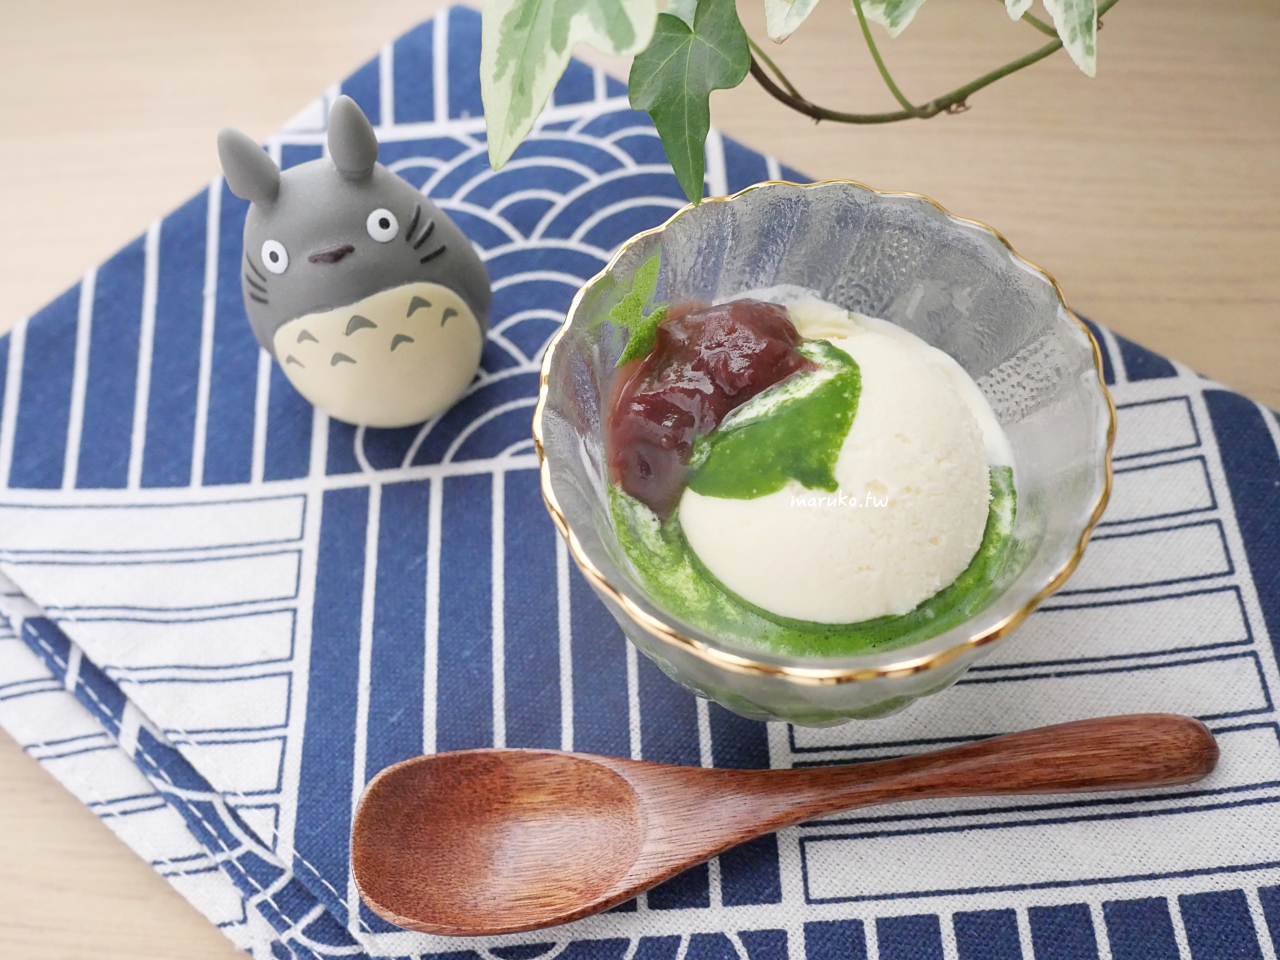 【食譜】抹茶紅豆香草冰淇淋 三樣食材簡單做日本最原味的抹茶甜點！ @Maruko與美食有個約會